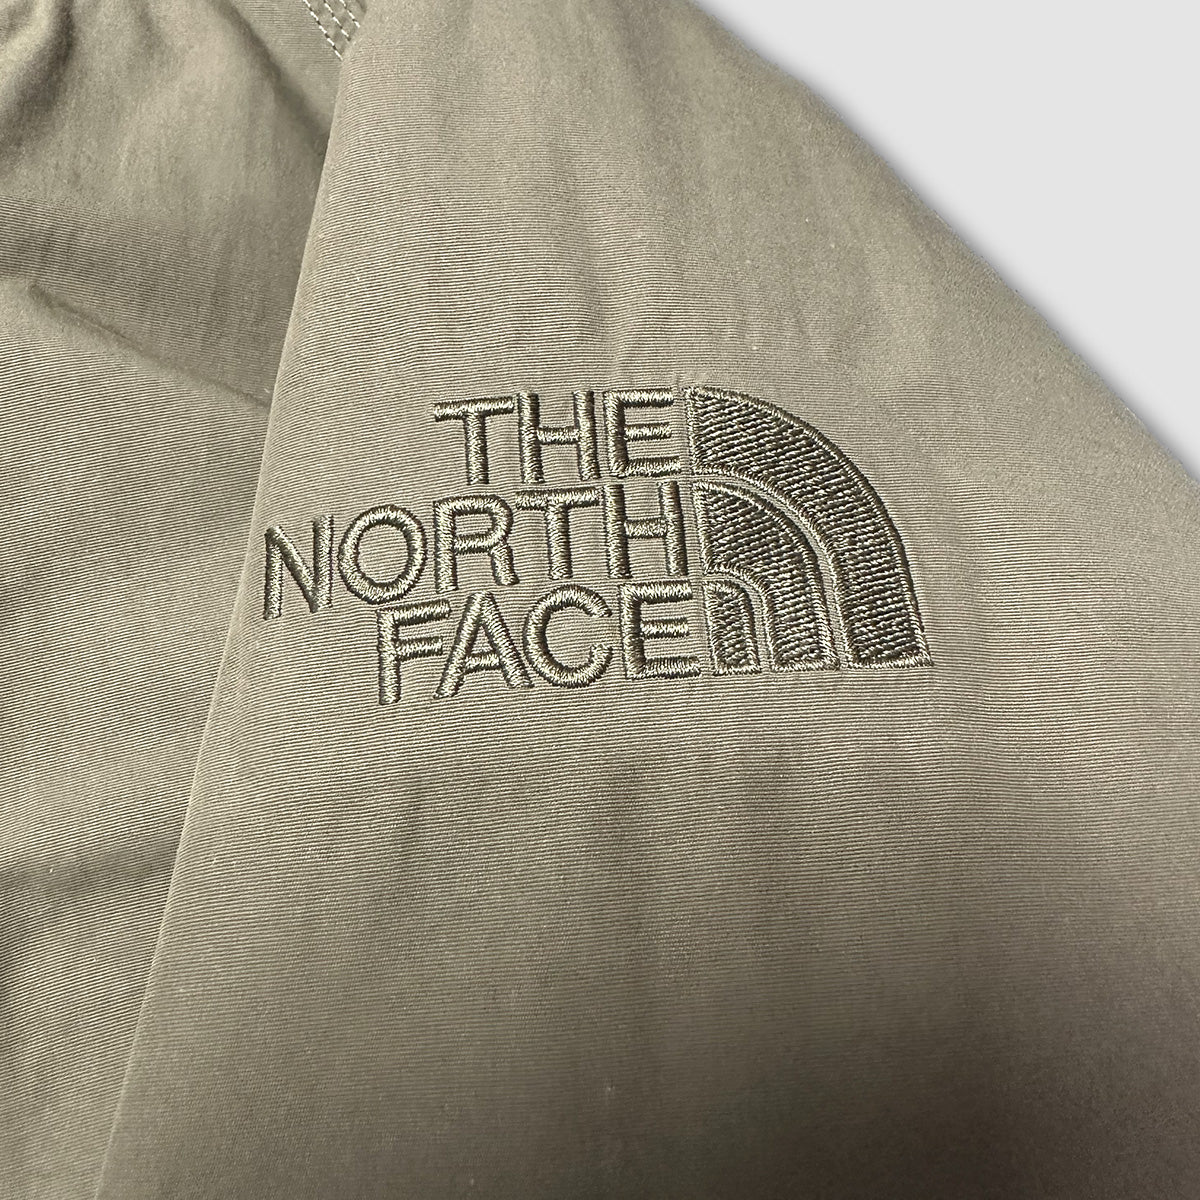 10057【THE NORTH FACE】ザノースフェイス メンズ HYVENT ハイベント グース ダウンジャケット カーキ 100